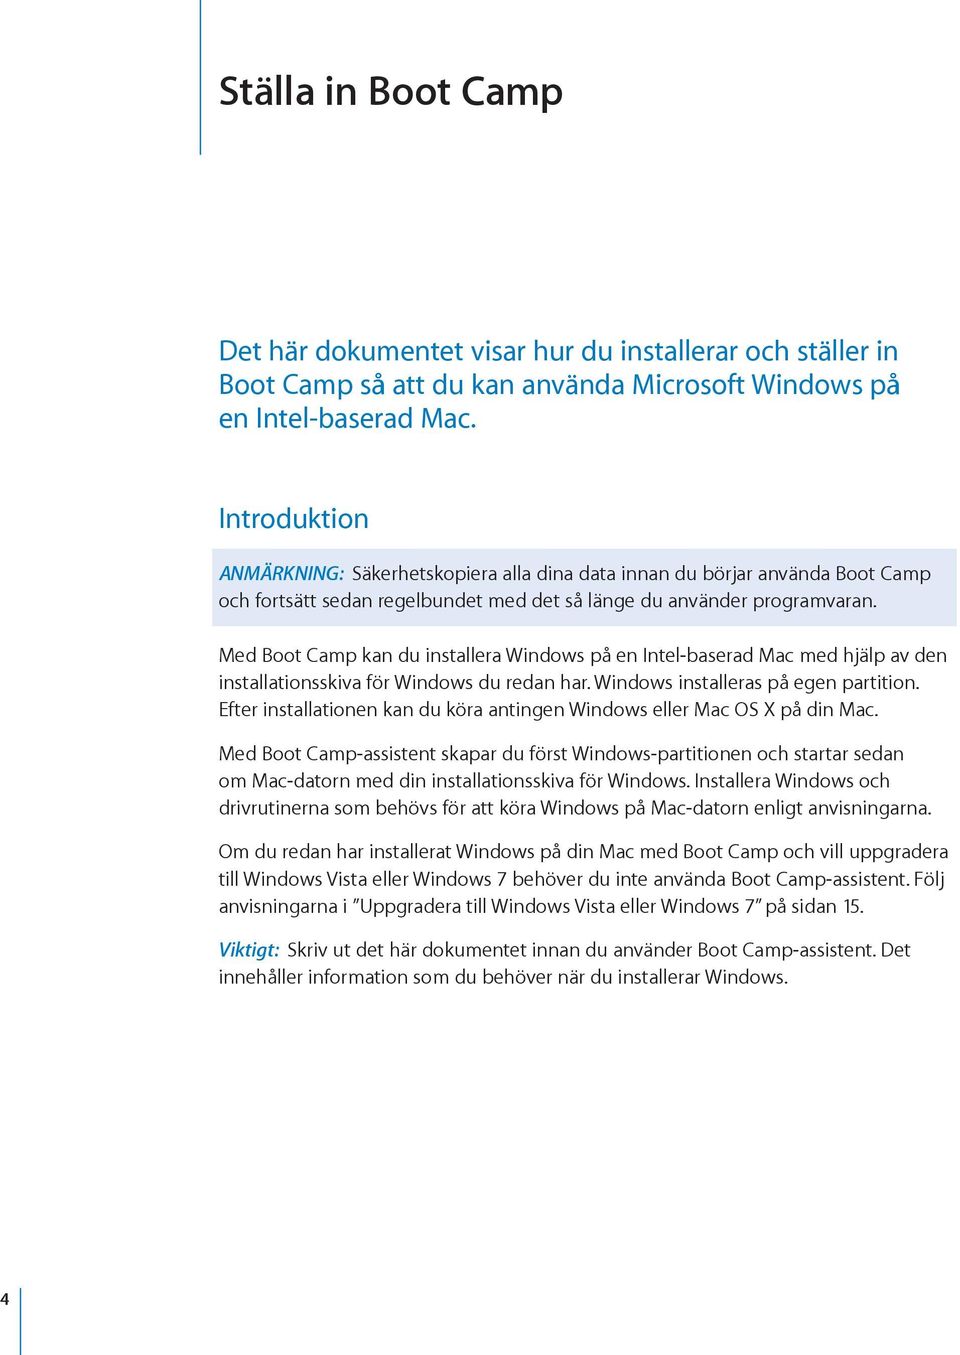 Med Boot Camp kan du installera Windows på en Intel-baserad Mac med hjälp av den installationsskiva för Windows du redan har. Windows installeras på egen partition.